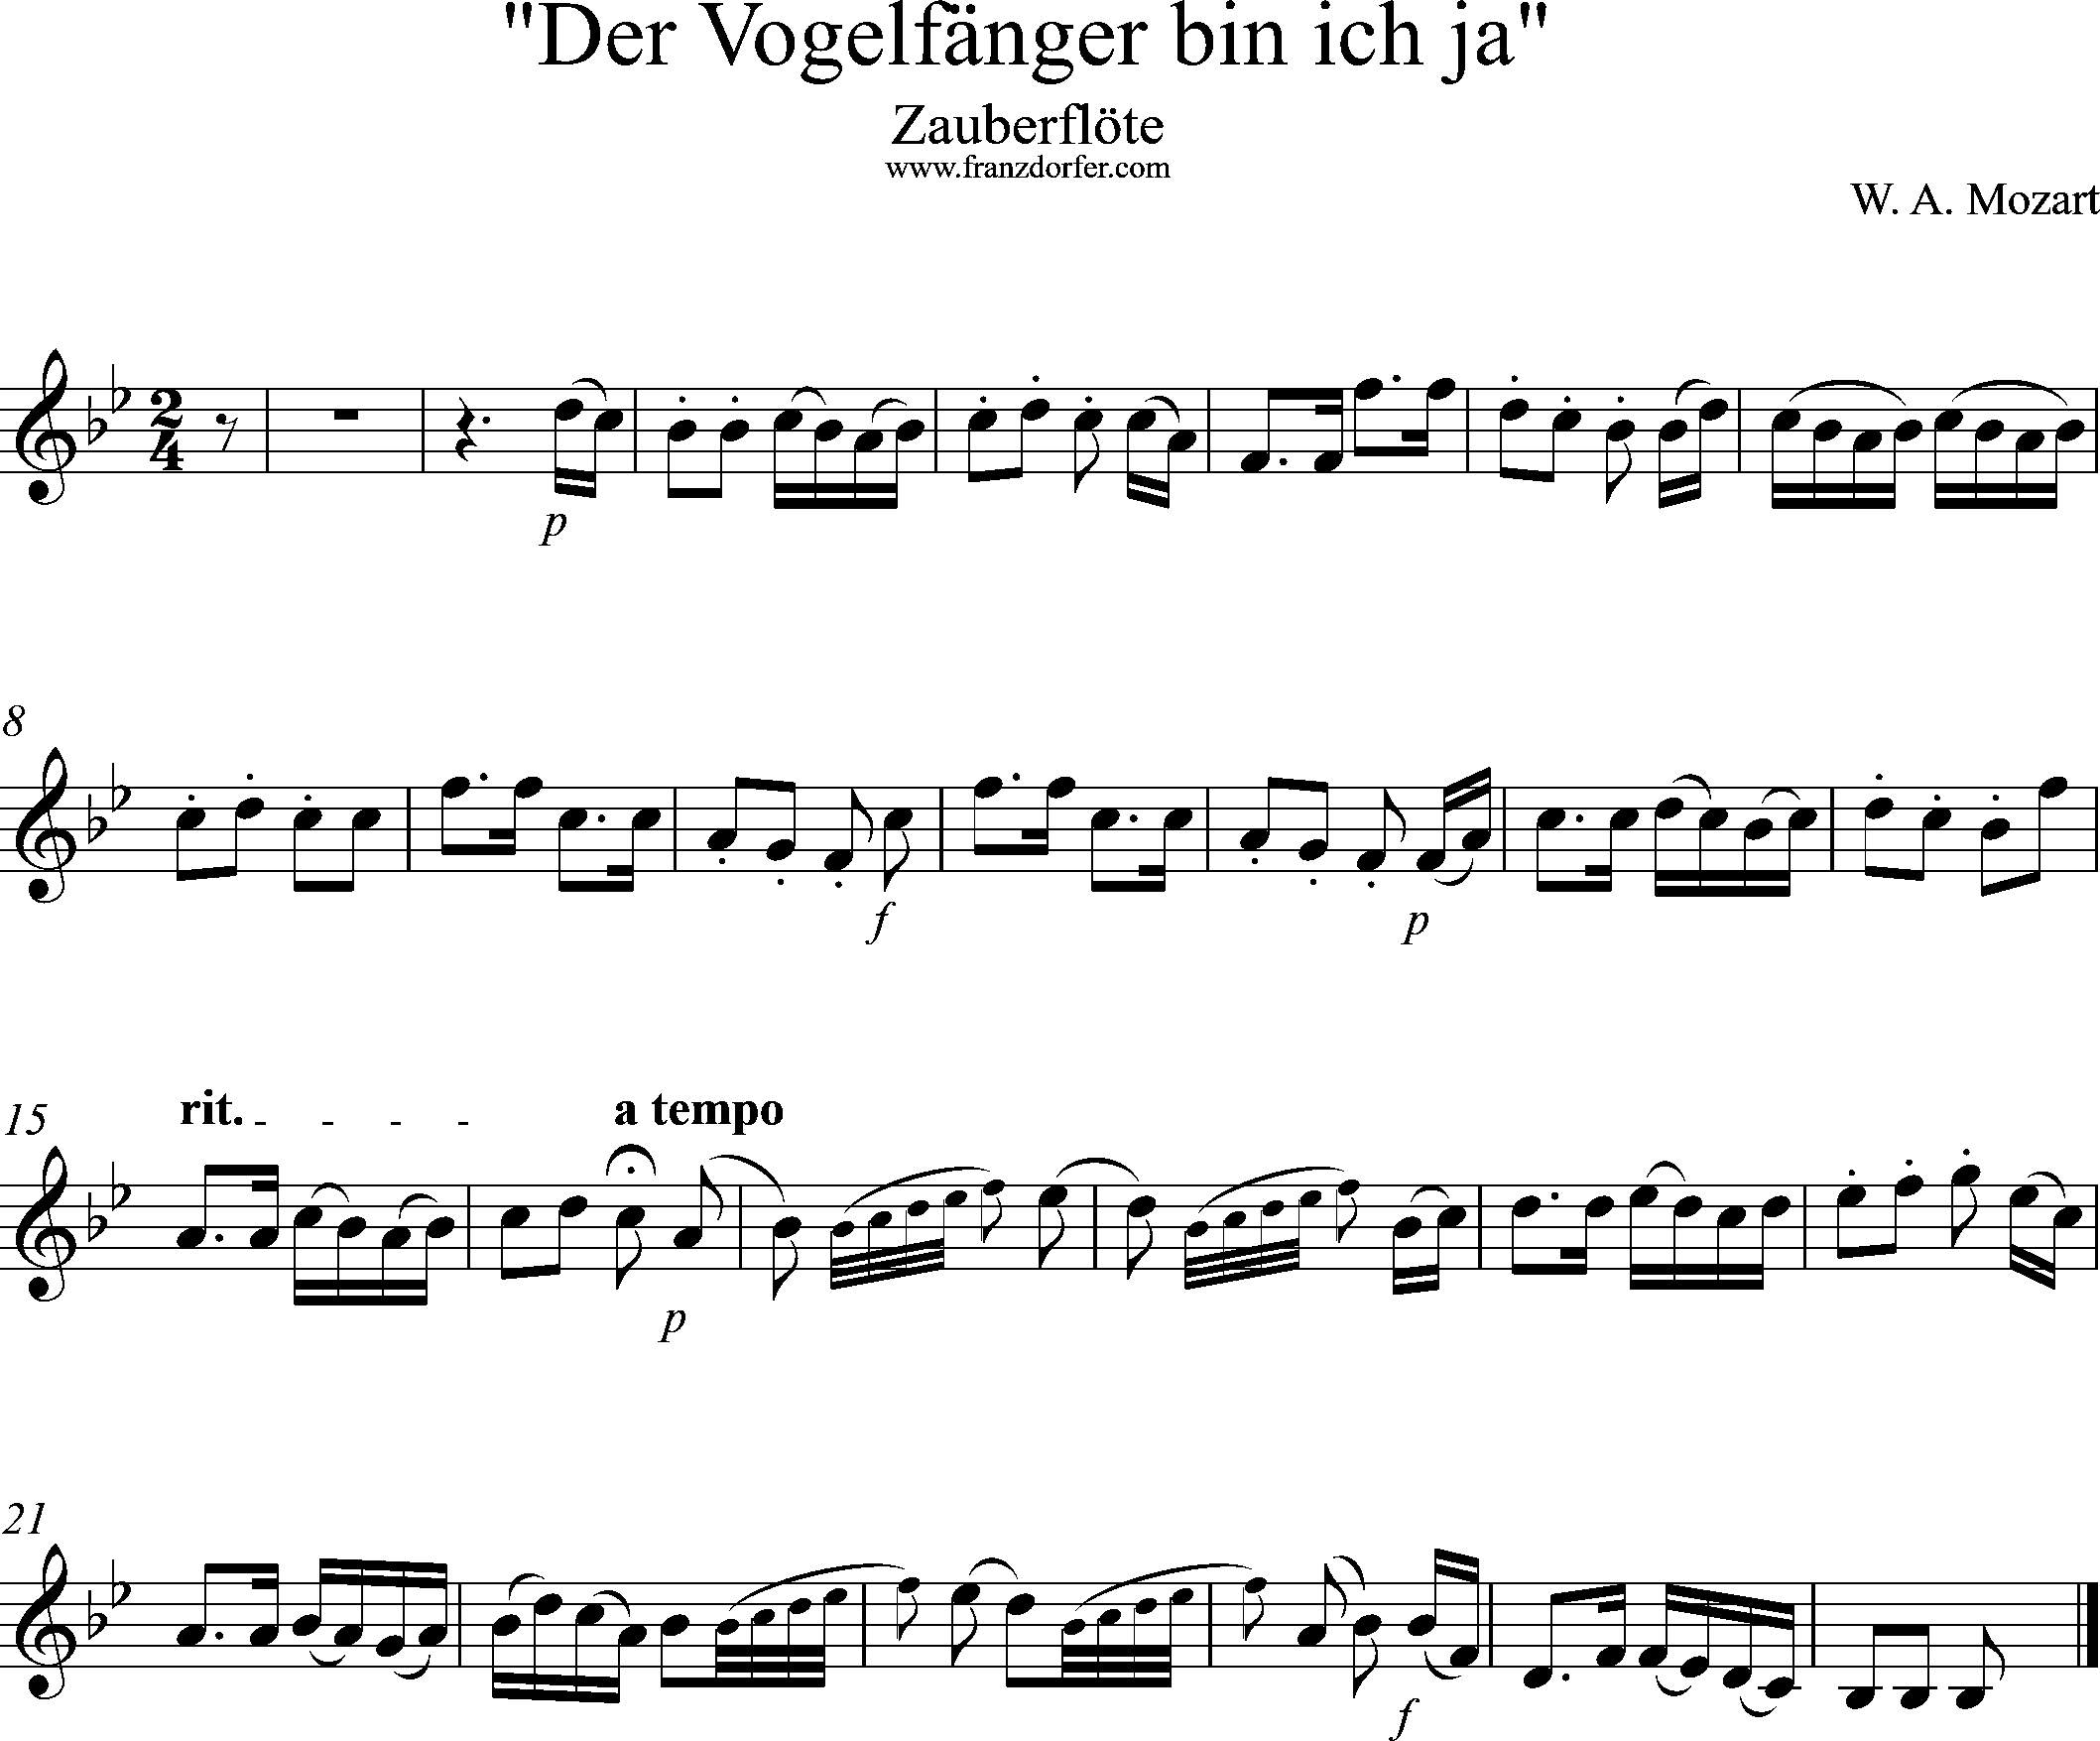 Uauberflöte, Vogelfängerlied, Solostimme, Bb-Dur